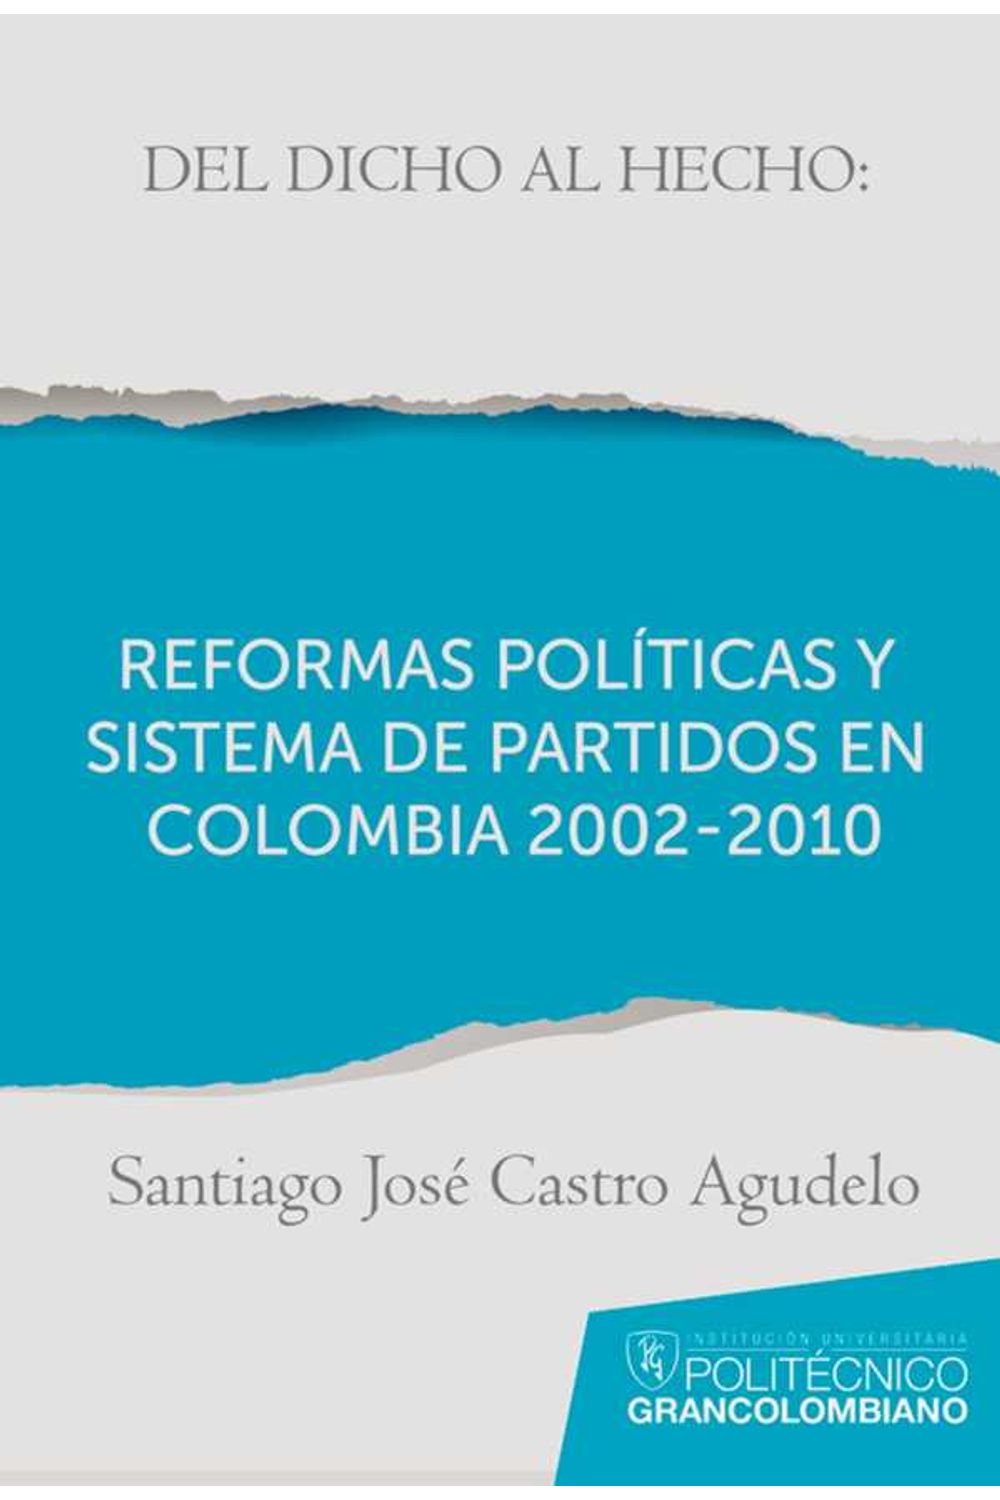 bw-del-dicho-al-hecho-reformas-poliacuteticas-y-sistemas-de-partidos-en-colombia-2002-2010-politecnico-grancolombiano-9789588721200